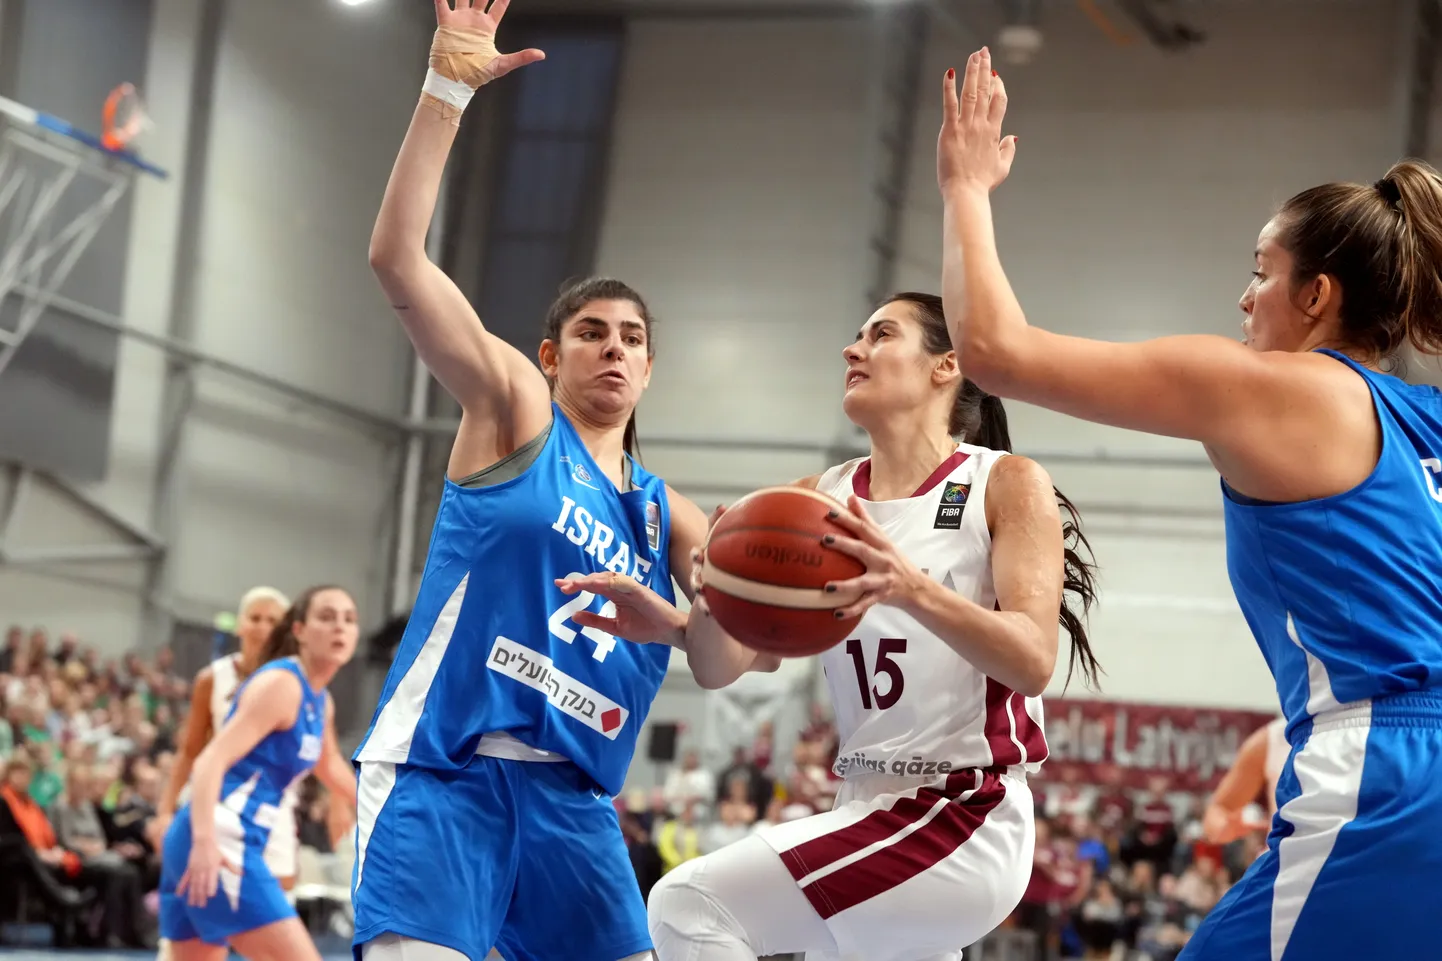 Eiropas čempionāta kvalifikācijas spēle basketbolā sievietēm starp Latvijas un Izraēlas komandām 
"Rimi" Olimpiskajā centrā.